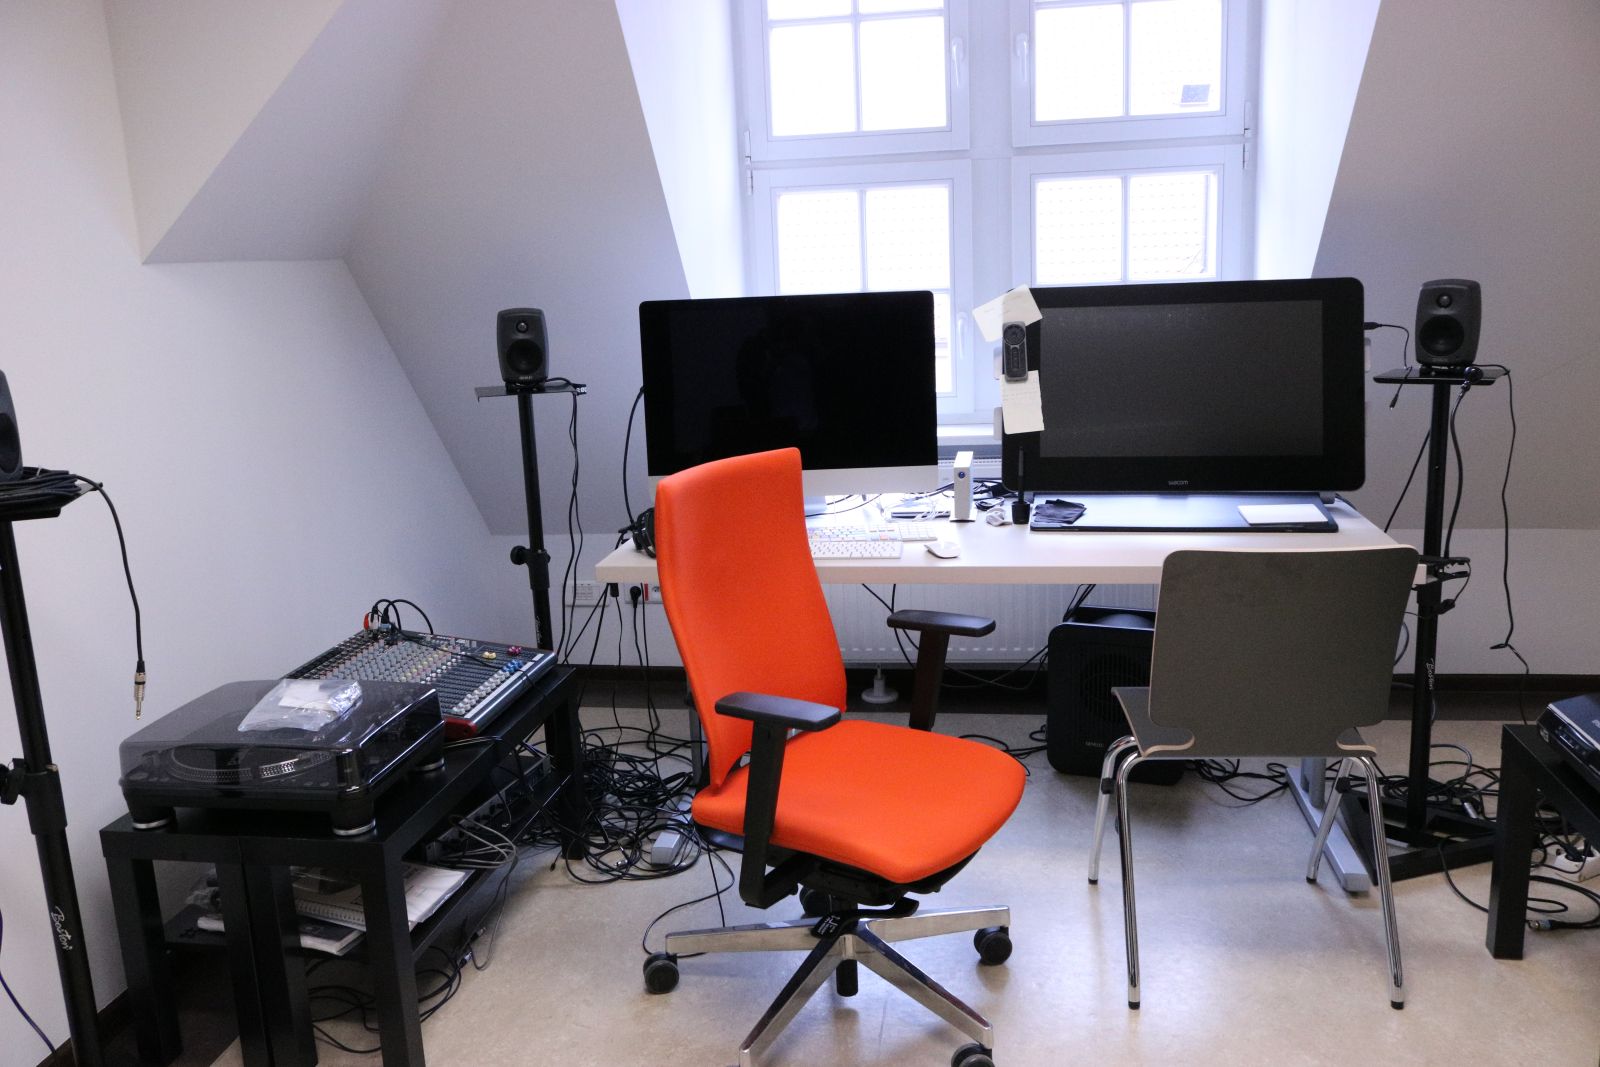 Zdjęcie biurka z dwoma dużymi ekranami komputera, przed którym stoi pomarańczowy fotel biurowy, a obok różny sprzęt do nagrywania i odtwarzania dźwięku, sporo zwojów kabli, mikrofony itp.